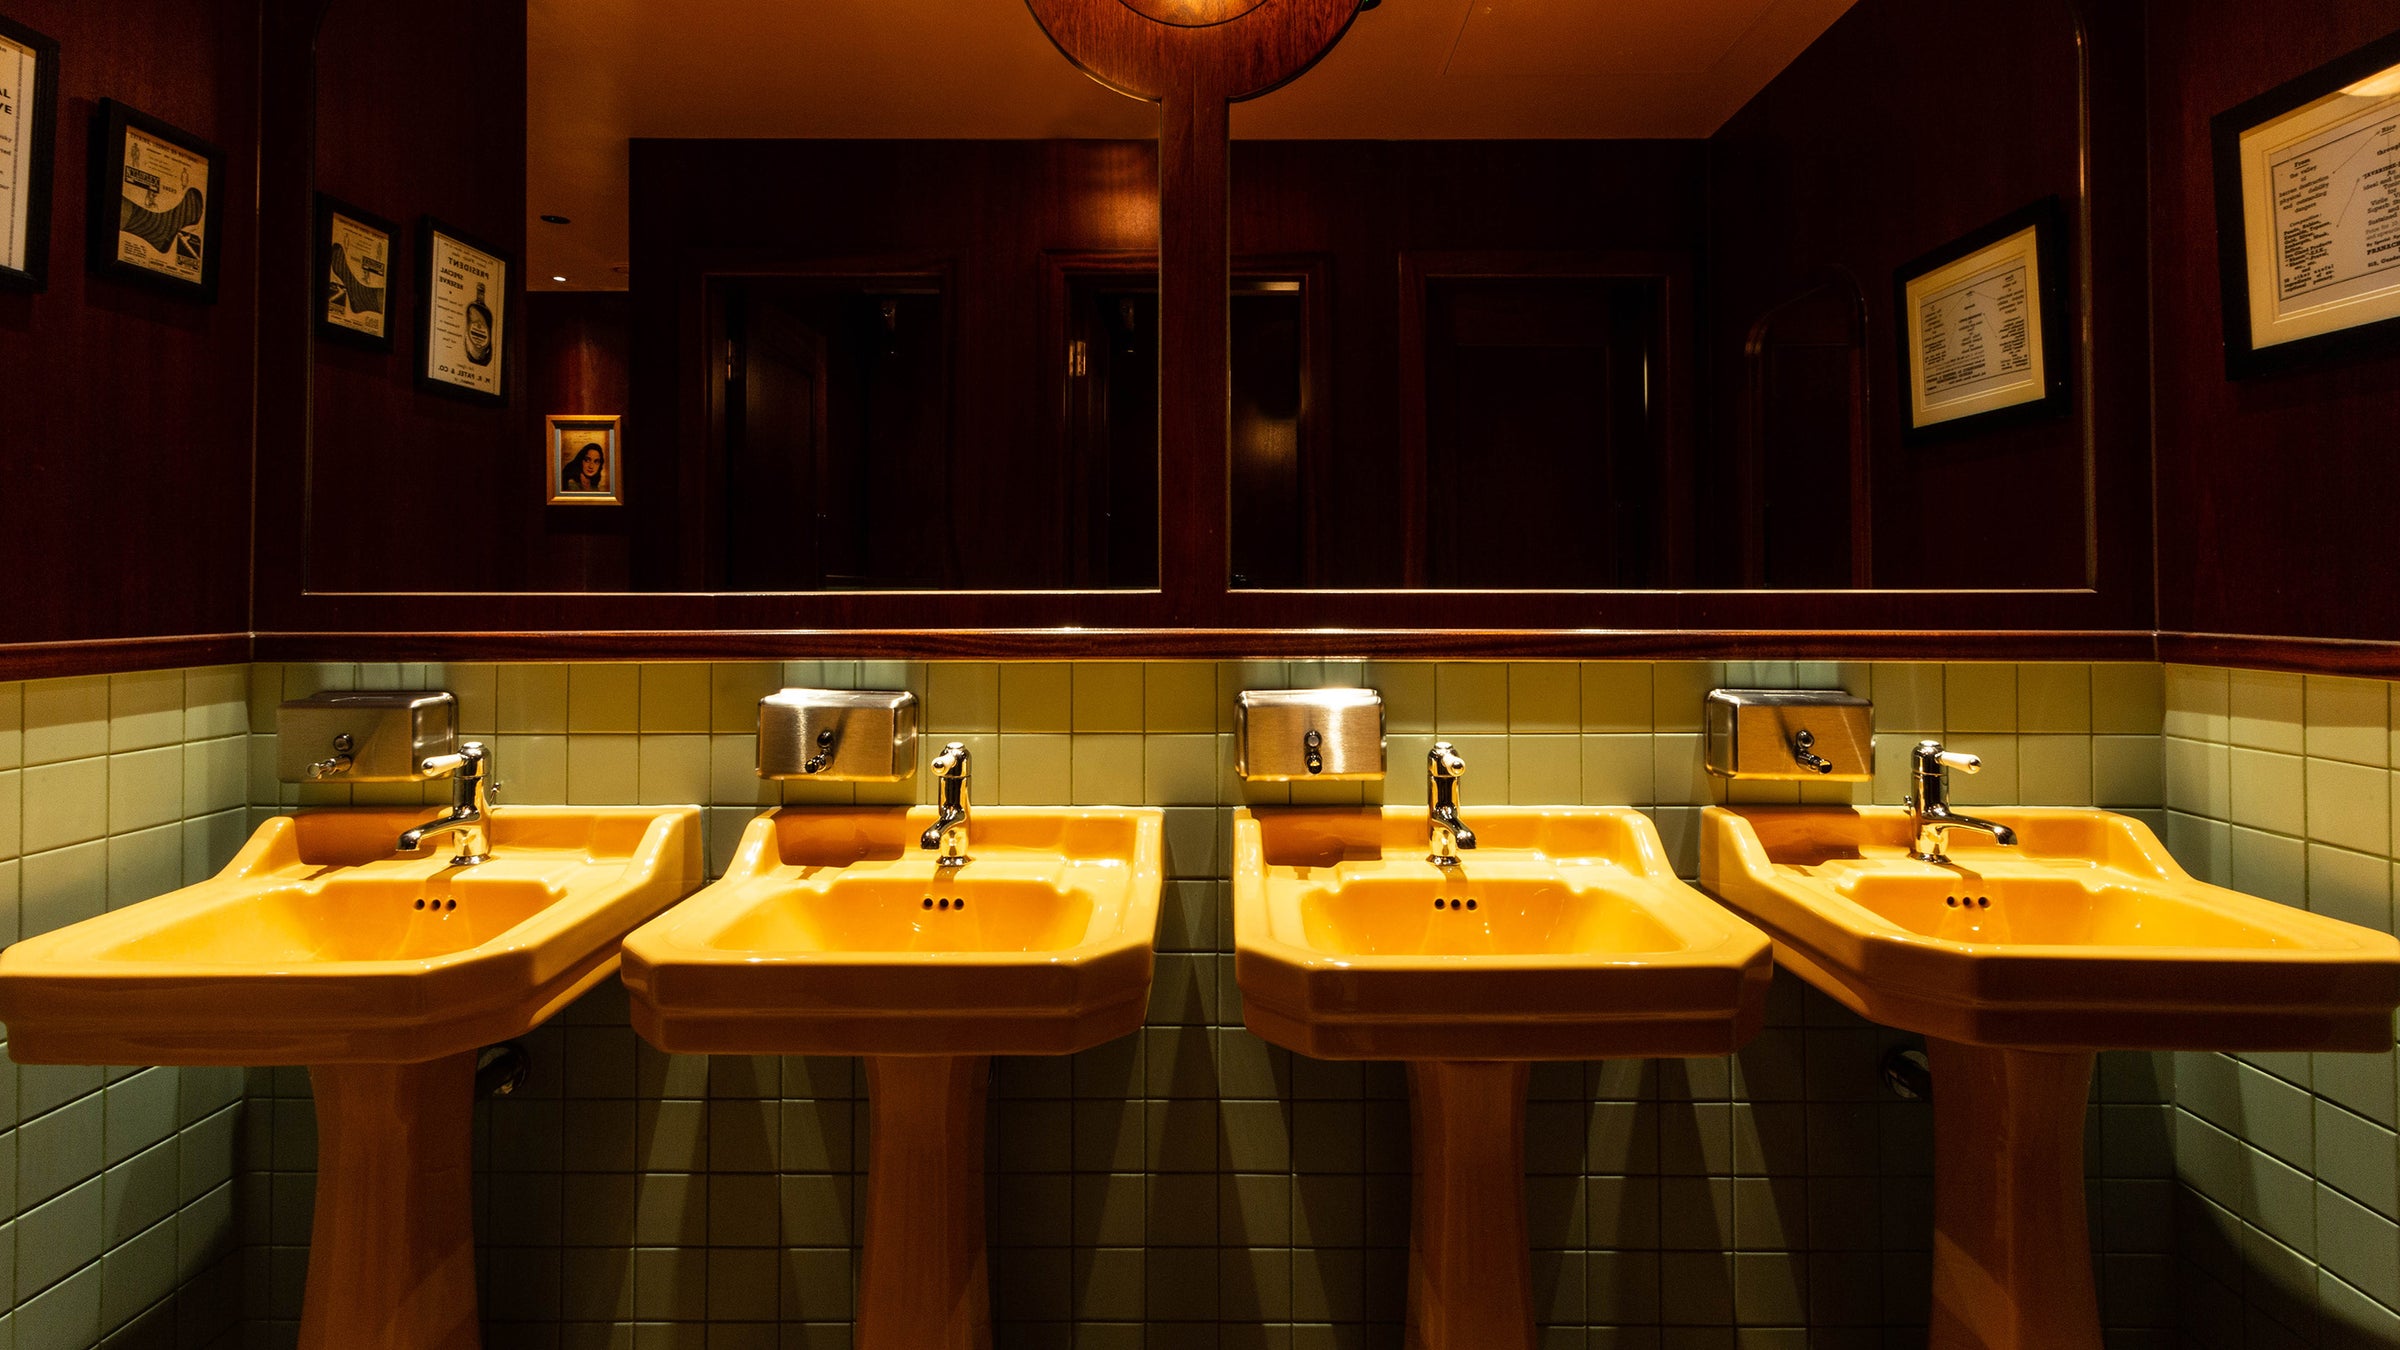 Deco sinks basins, custom colour, Harvest Gold, commercial project, restaurant, bar, The Bold Bathroom Company